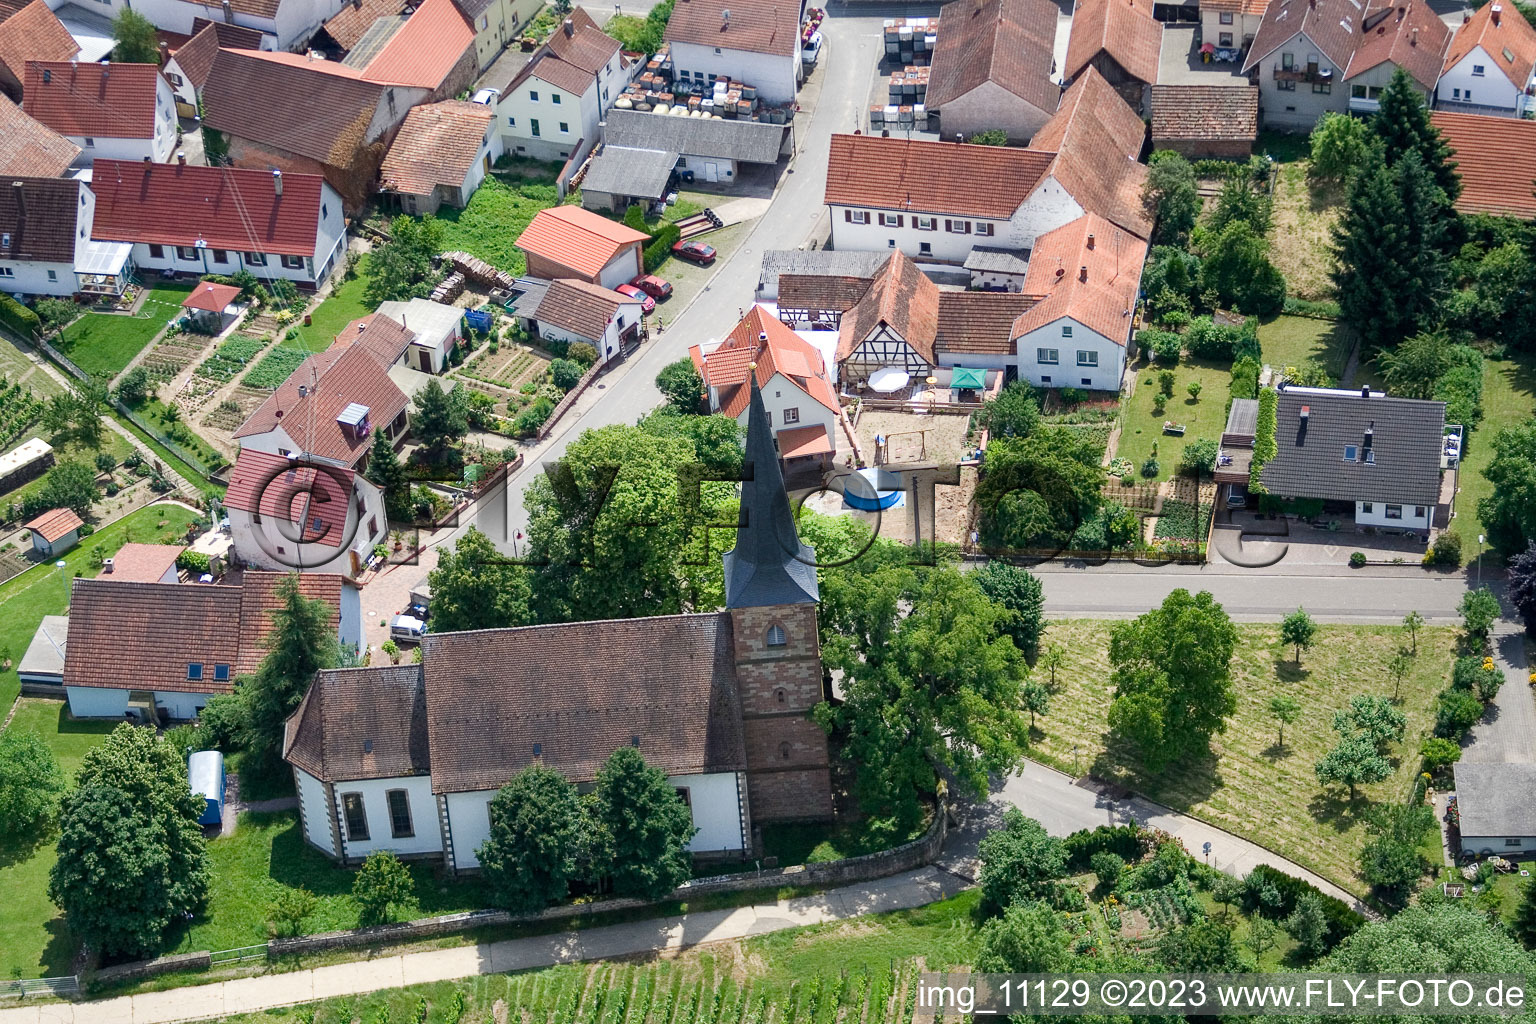 District Rechtenbach in Schweigen-Rechtenbach in the state Rhineland-Palatinate, Germany viewn from the air